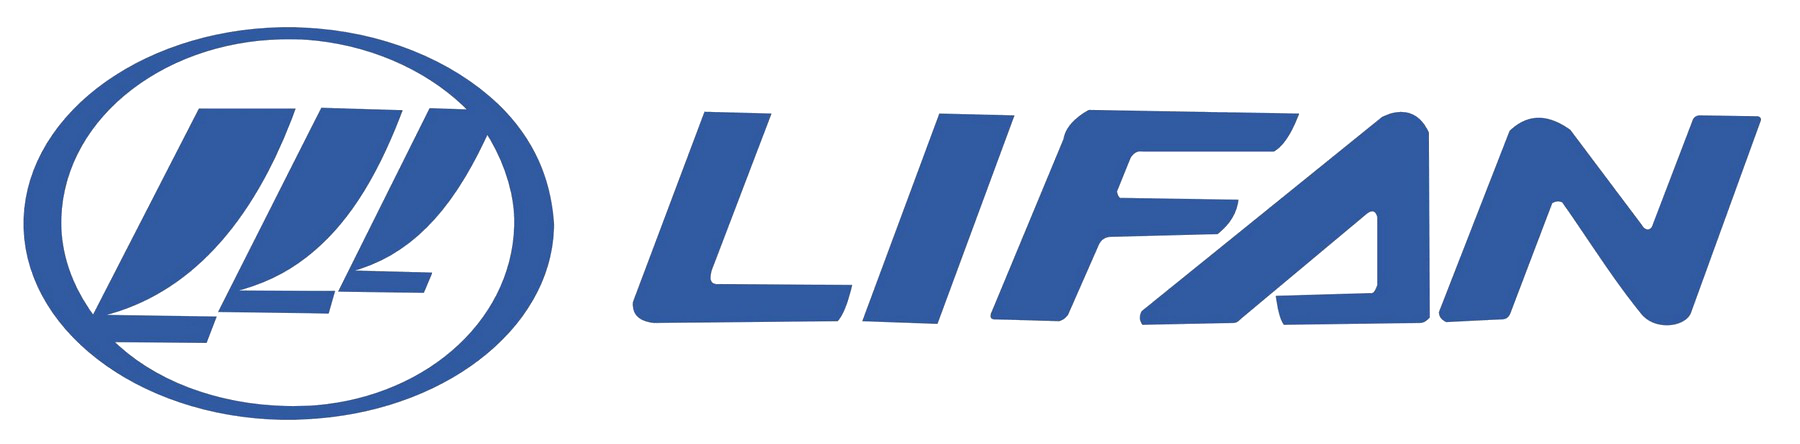 Lifan Logo - Lifan Car Logo